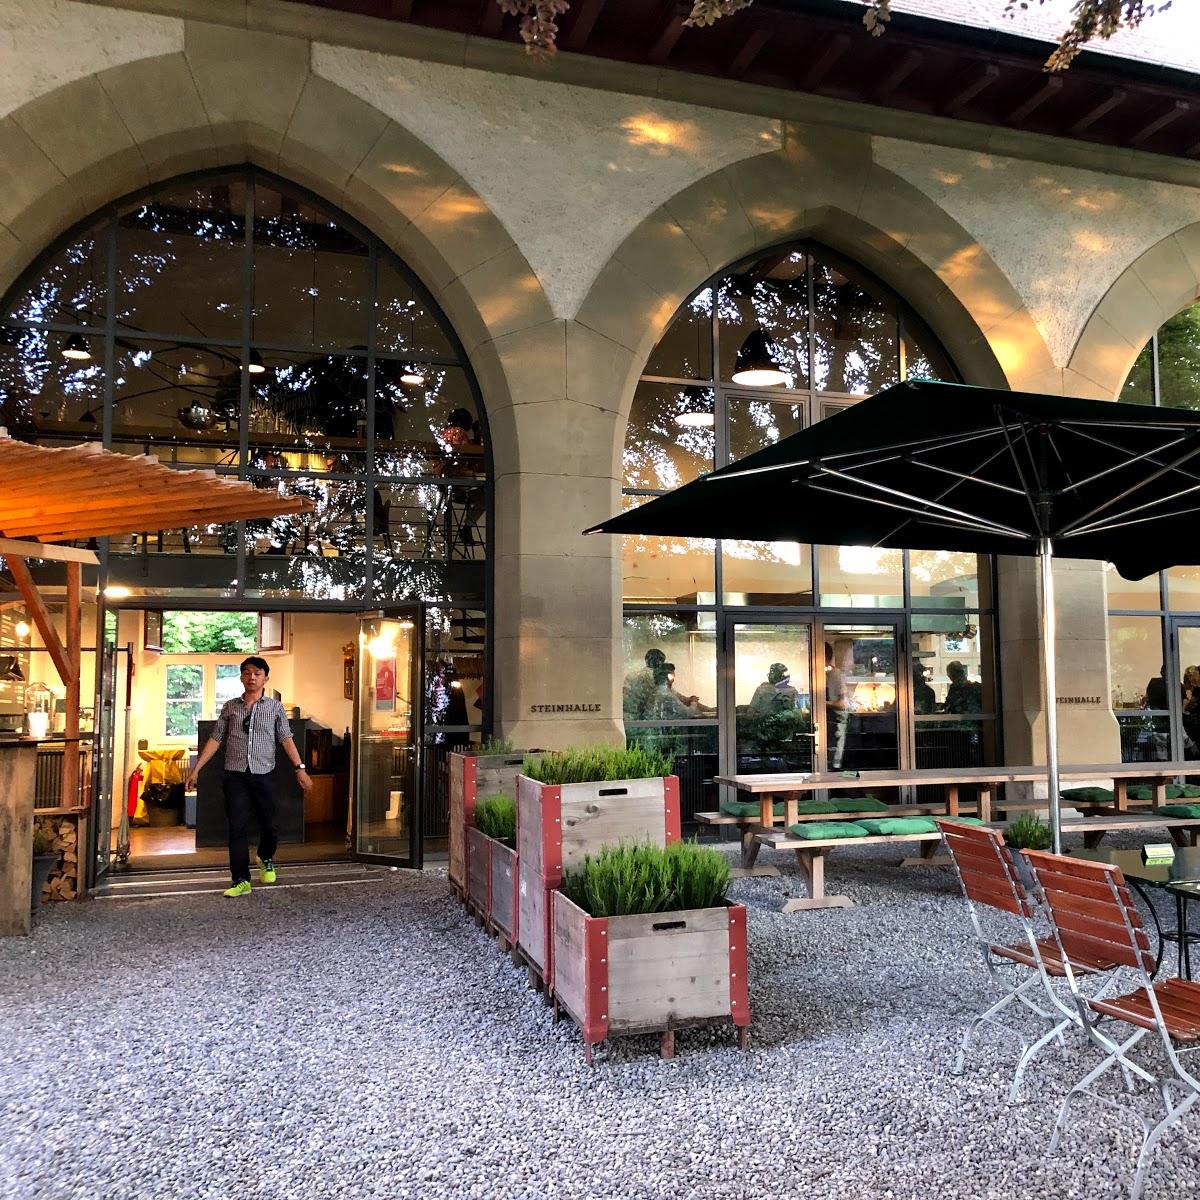 Restaurant "Steinhalle" in Bern